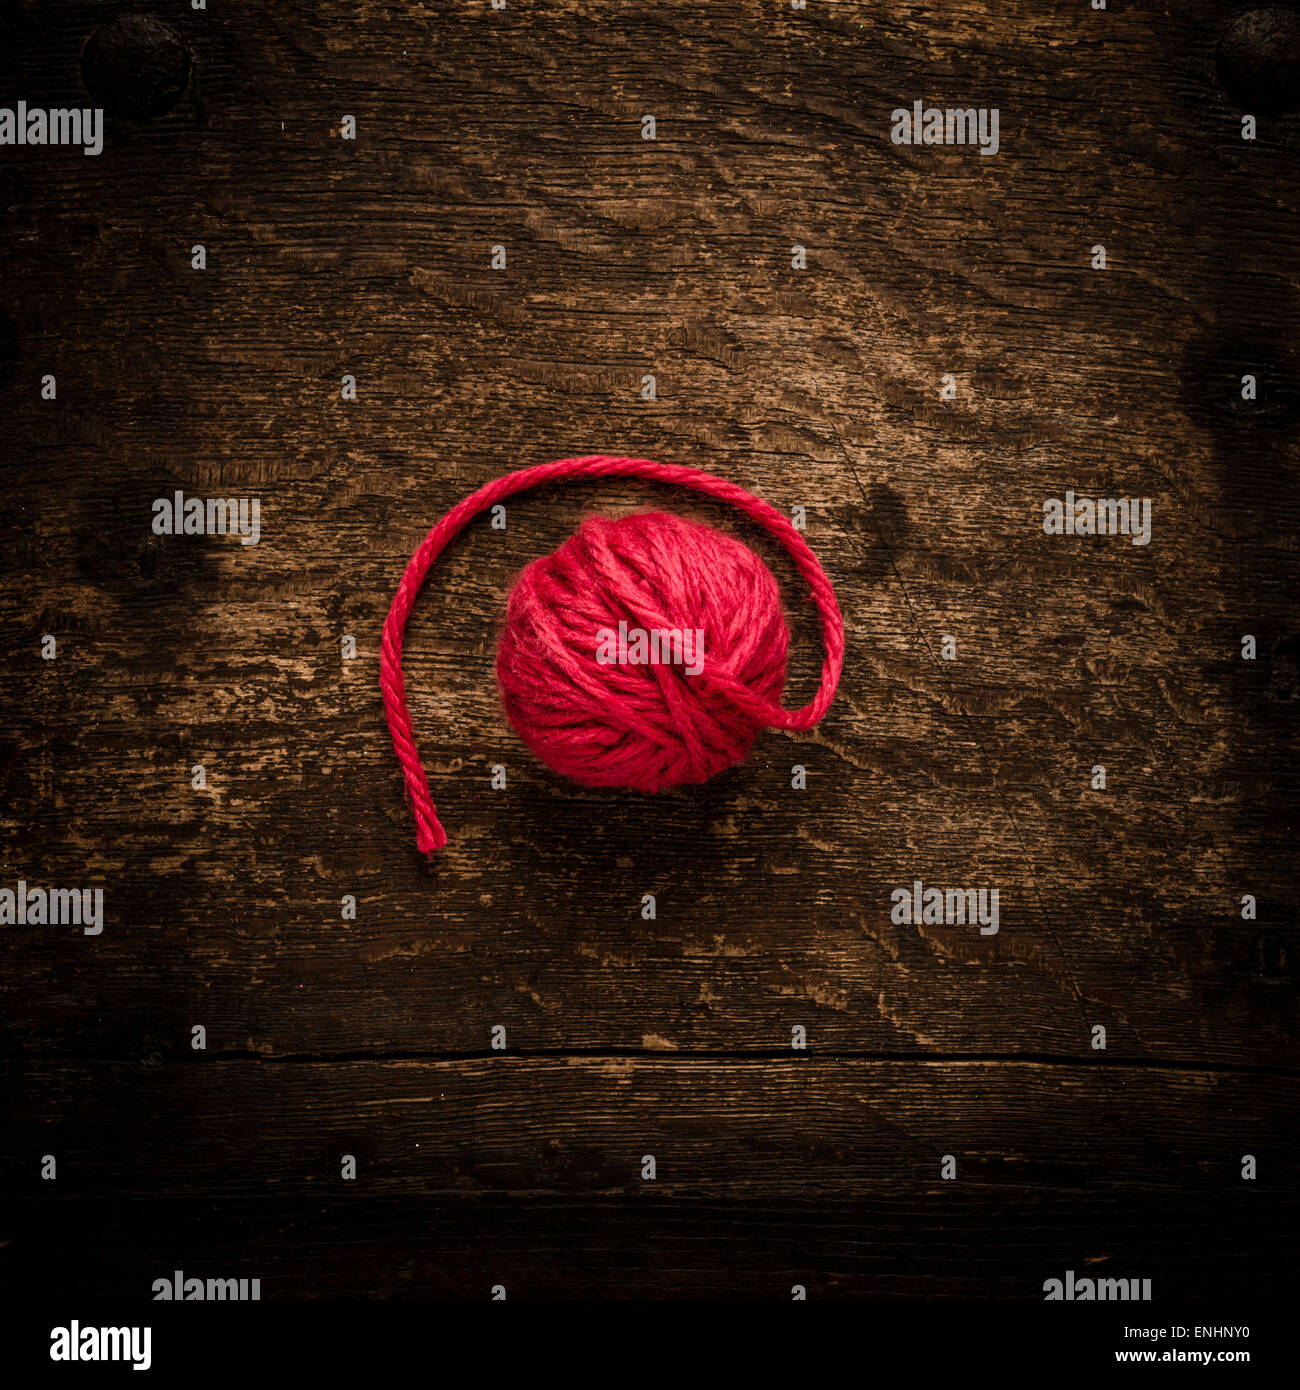 Ancora la vita della sfera del filo rosso sul tavolo di legno. Immagine concettuale di tessitura a maglia o a crochet. Foto Stock